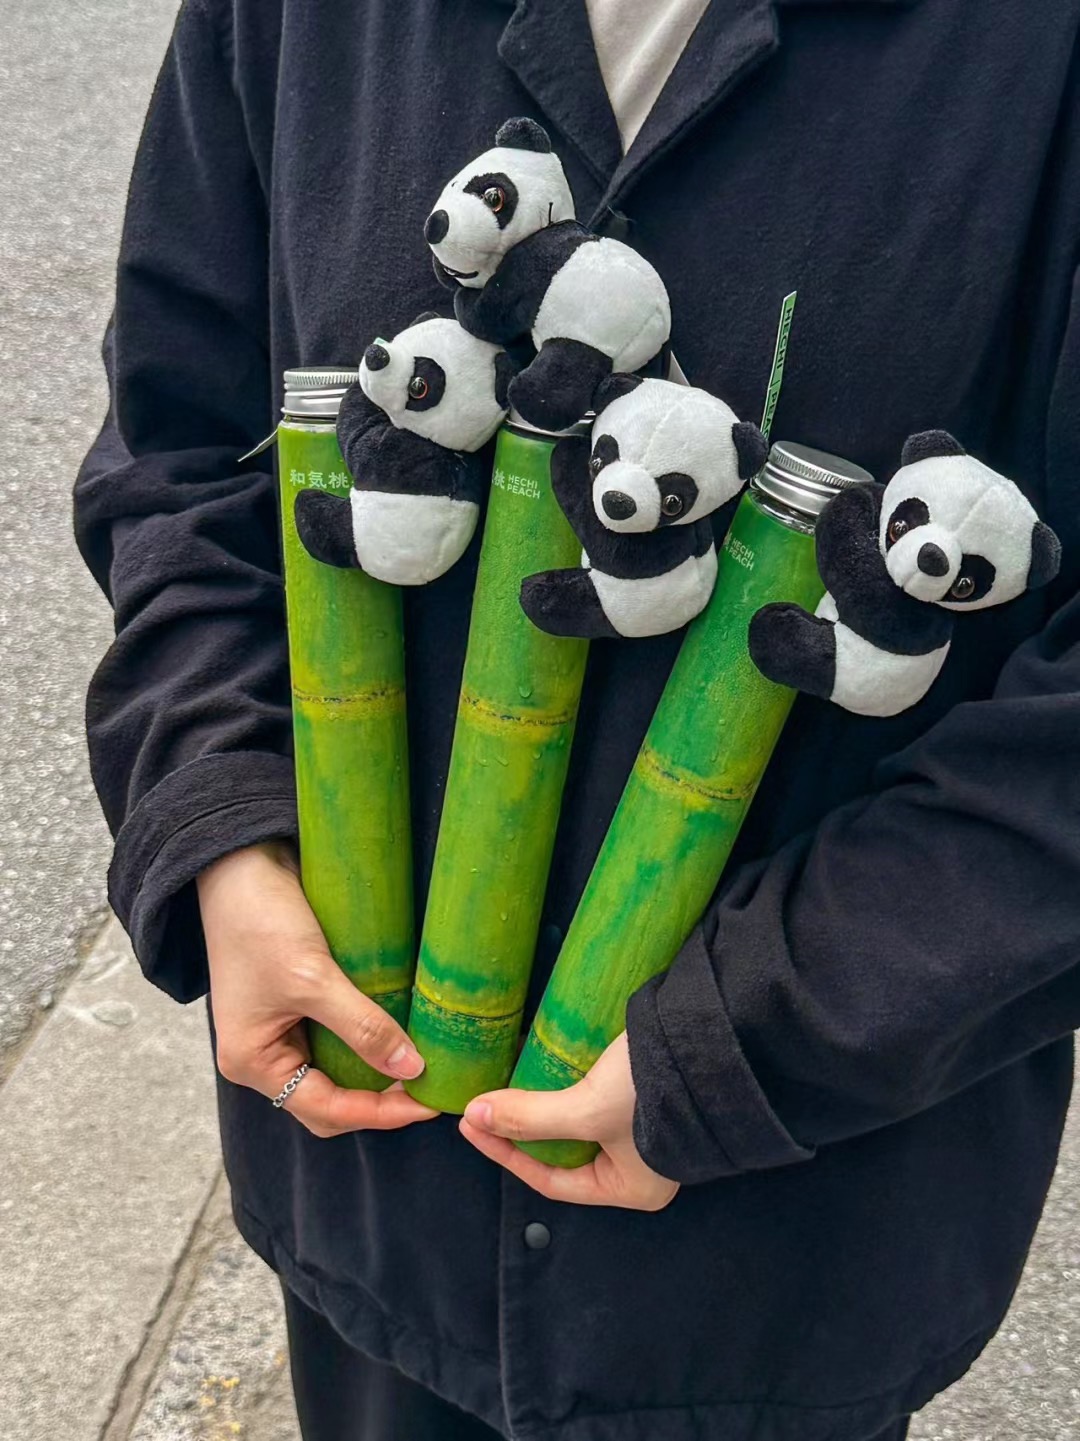 熊猫抱竹瓶